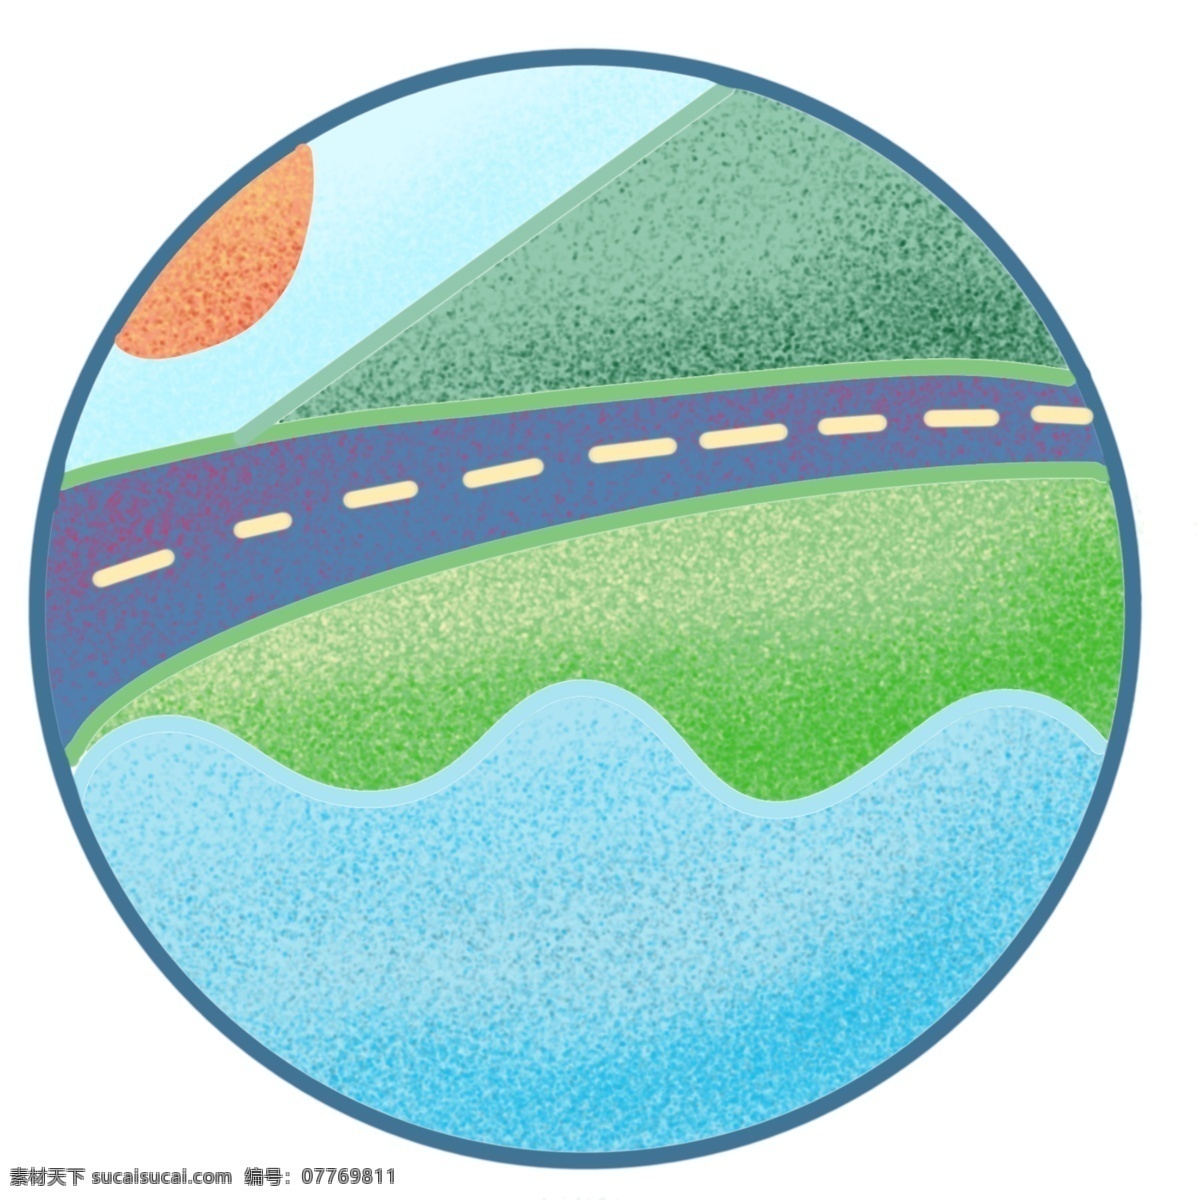 风景 公路 卡通 插画 风景的公路 卡通插画 公路插画 高速公路 道路插画 马路插画 好看的公路